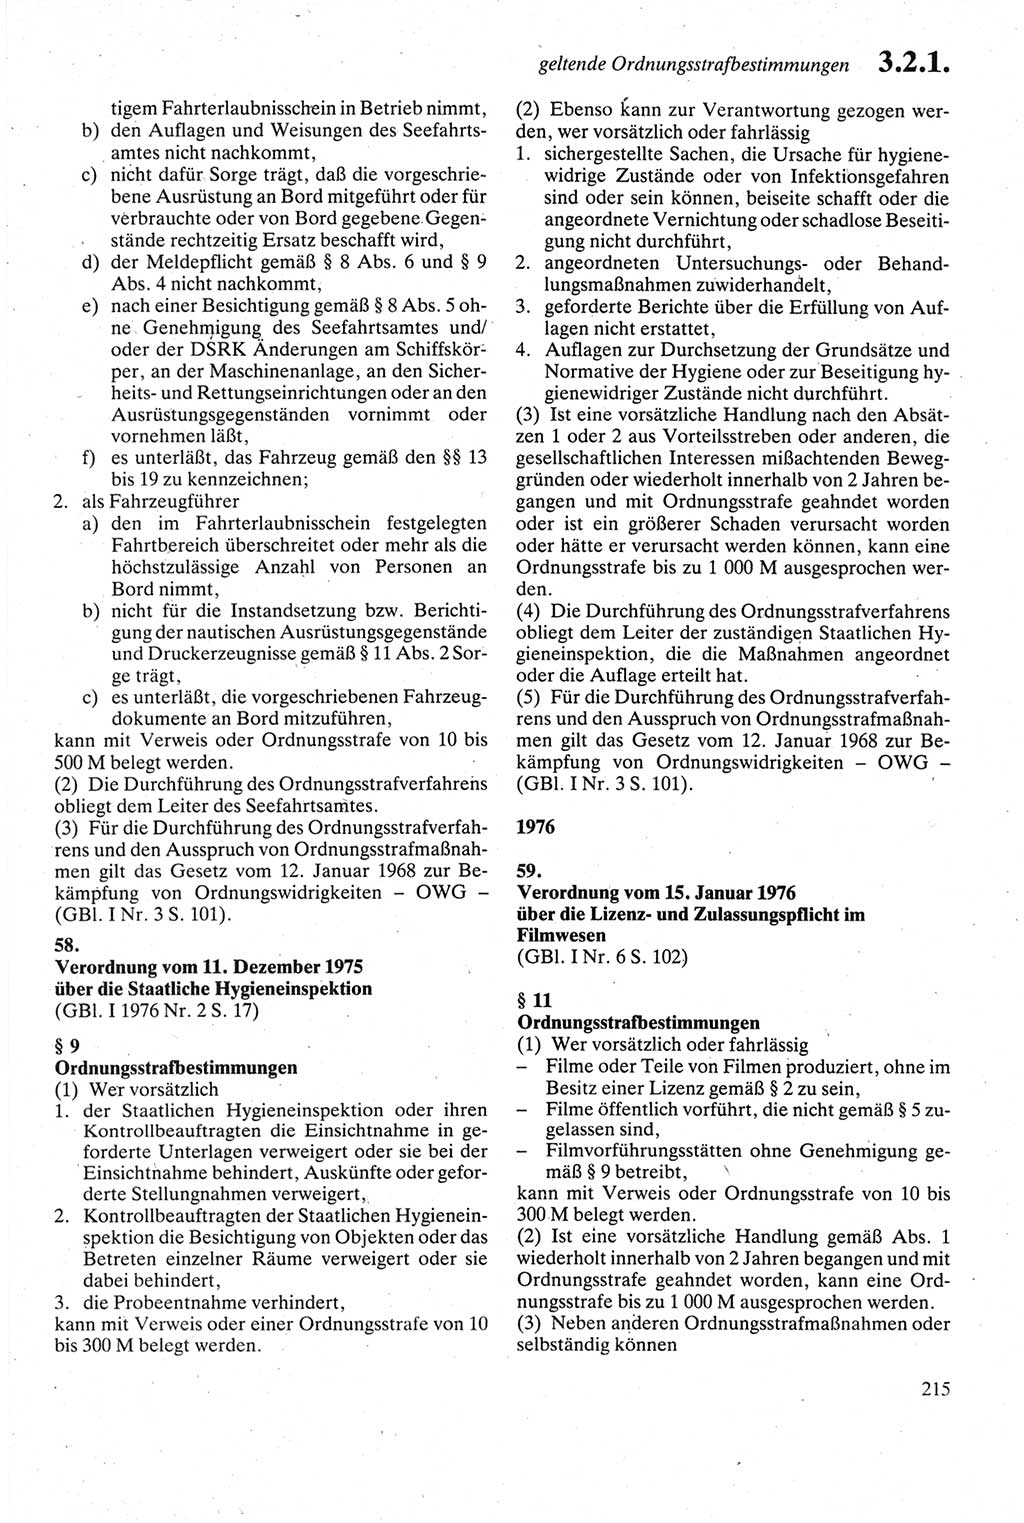 Strafgesetzbuch (StGB) der Deutschen Demokratischen Republik (DDR) sowie angrenzende Gesetze und Bestimmungen 1979, Seite 215 (StGB DDR Ges. Best. 1979, S. 215)